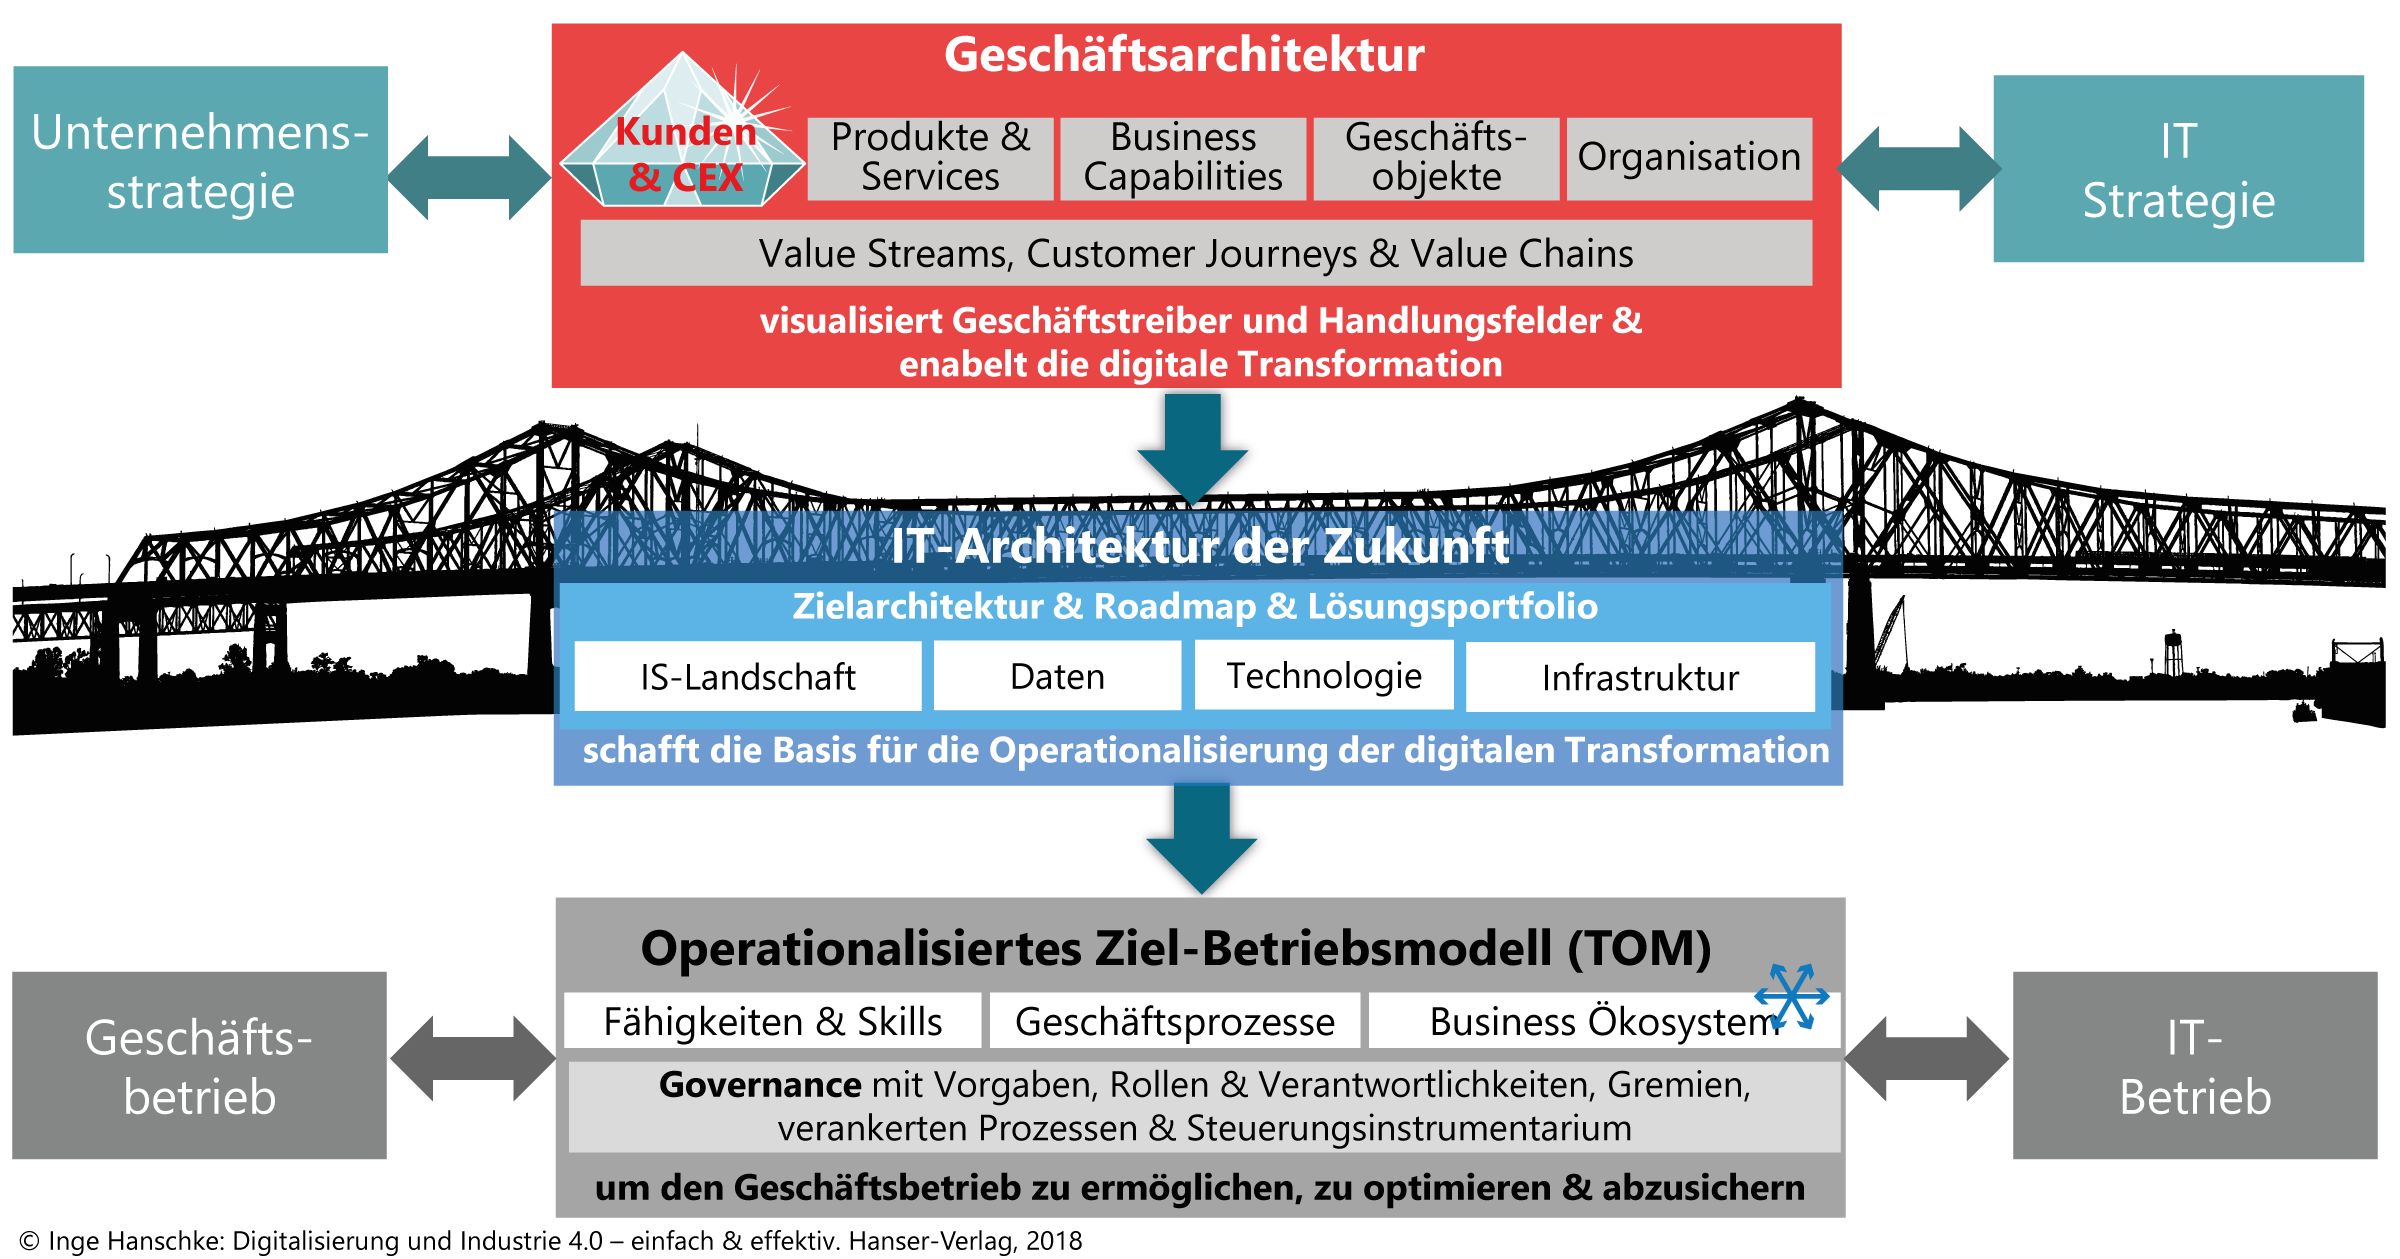 Business Architecture 4 Digitalization © Inge Hanschke “Digitalisierung und Industrie 4.0 – einfach & effektiv”. Hanser Fachbuch, Carl Hanser Verlag GmbH & Co. KG, 2018